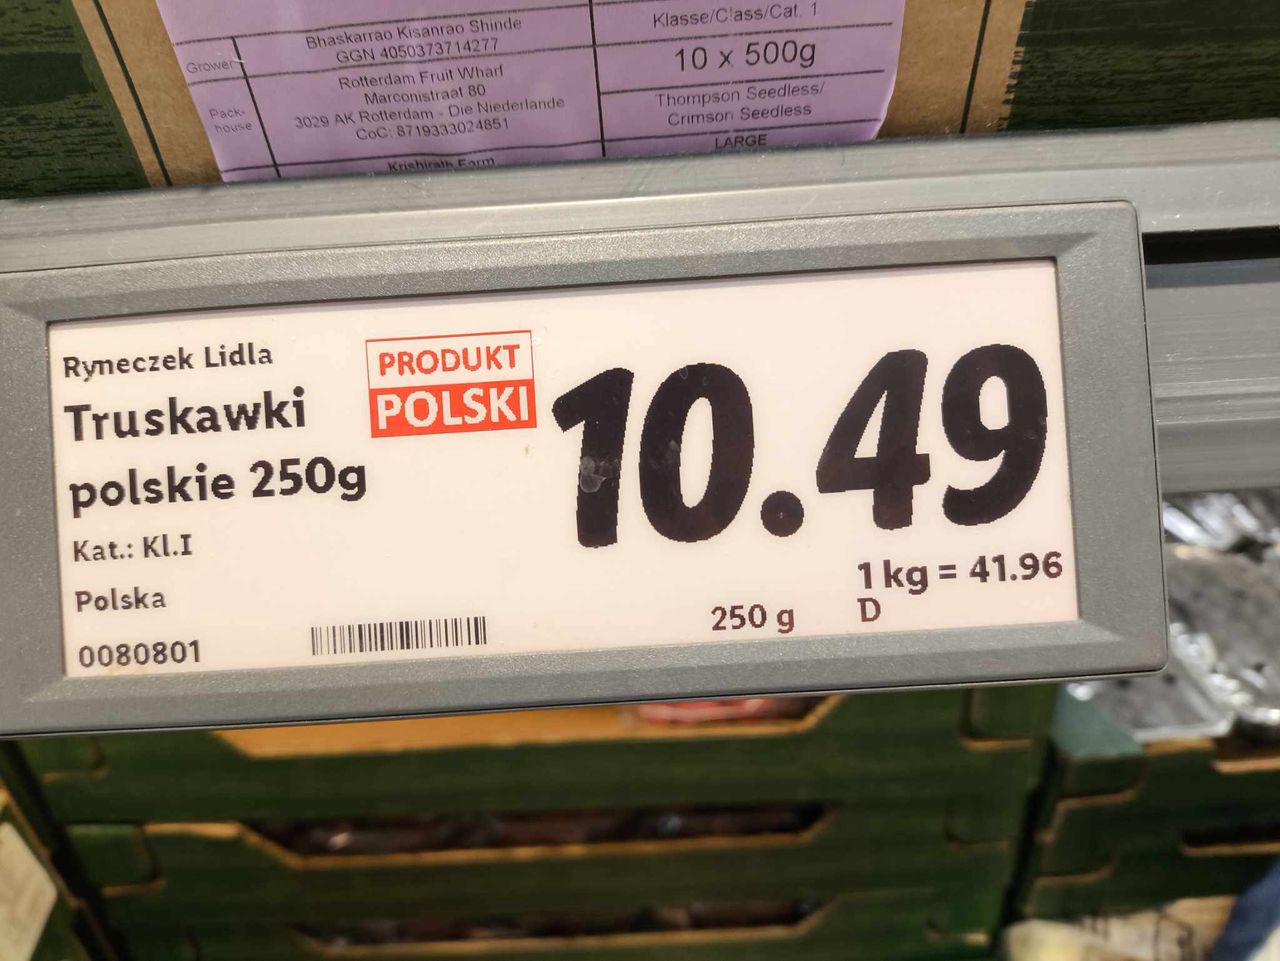 Truskawki z oznaczeniem "Produkt Polski"